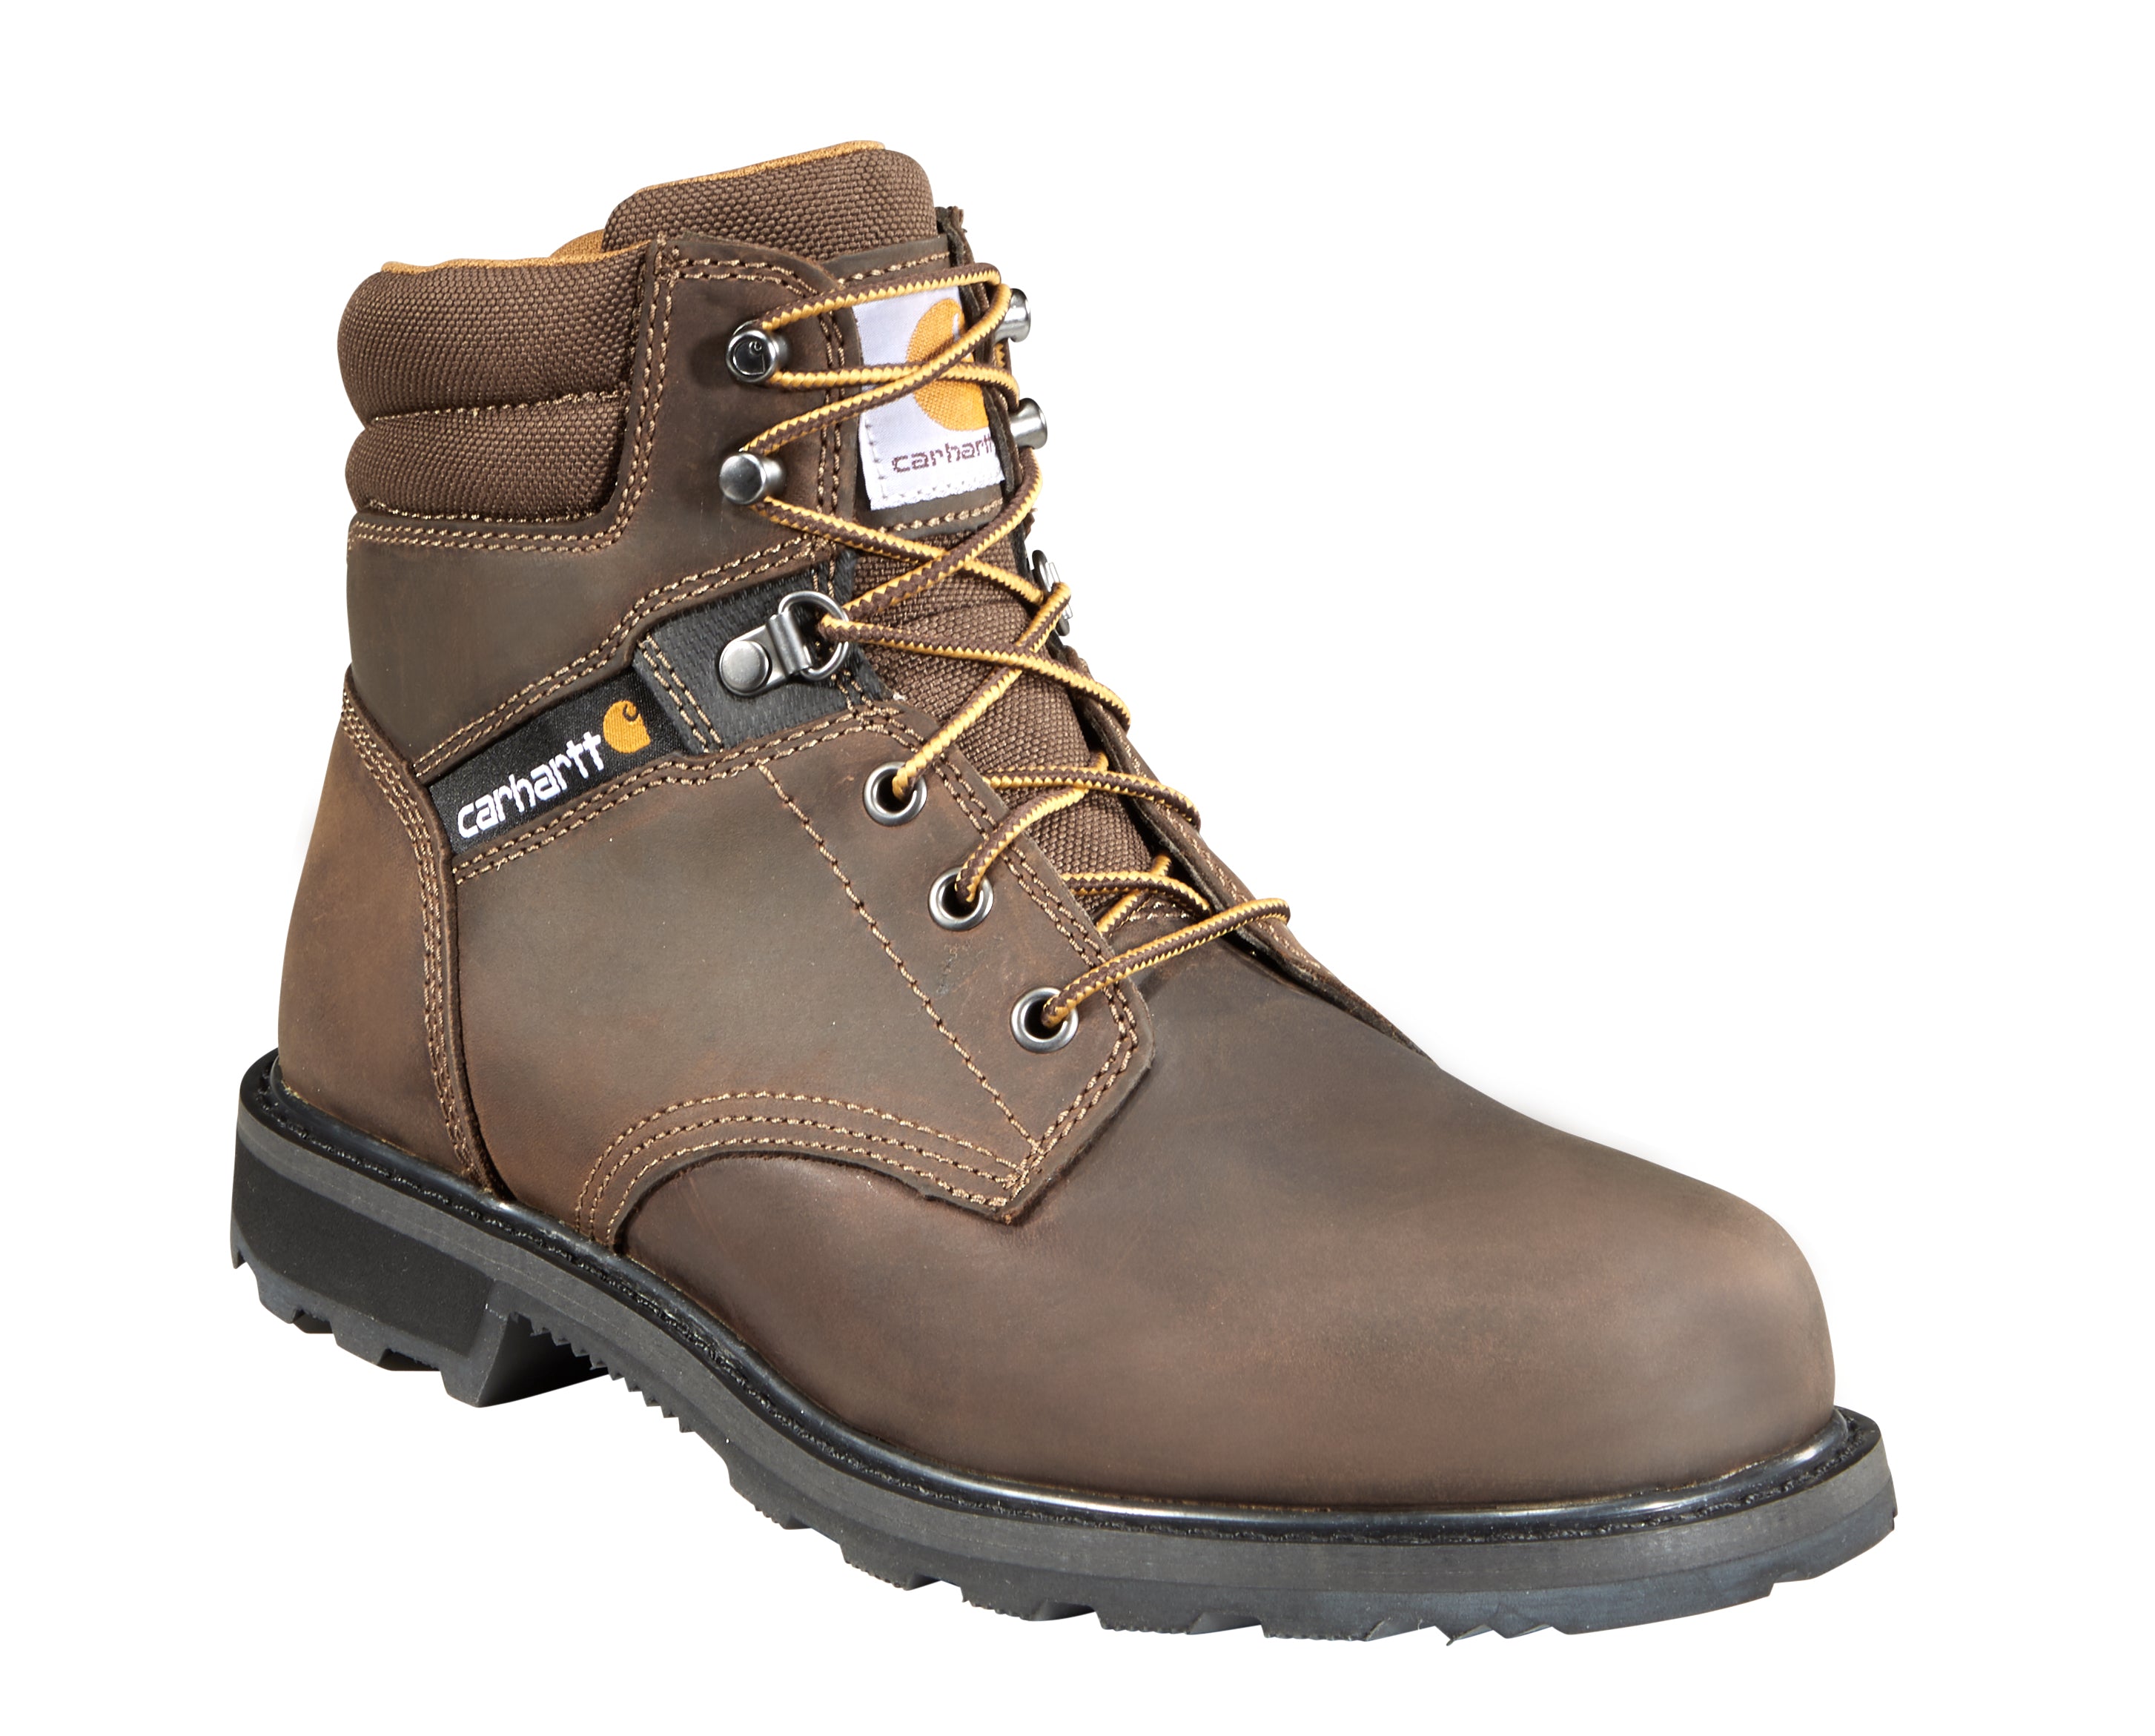 Carhartt Men's 6" Steel Toe Work Boot - Brown - CMW6274  - Overlook Boots